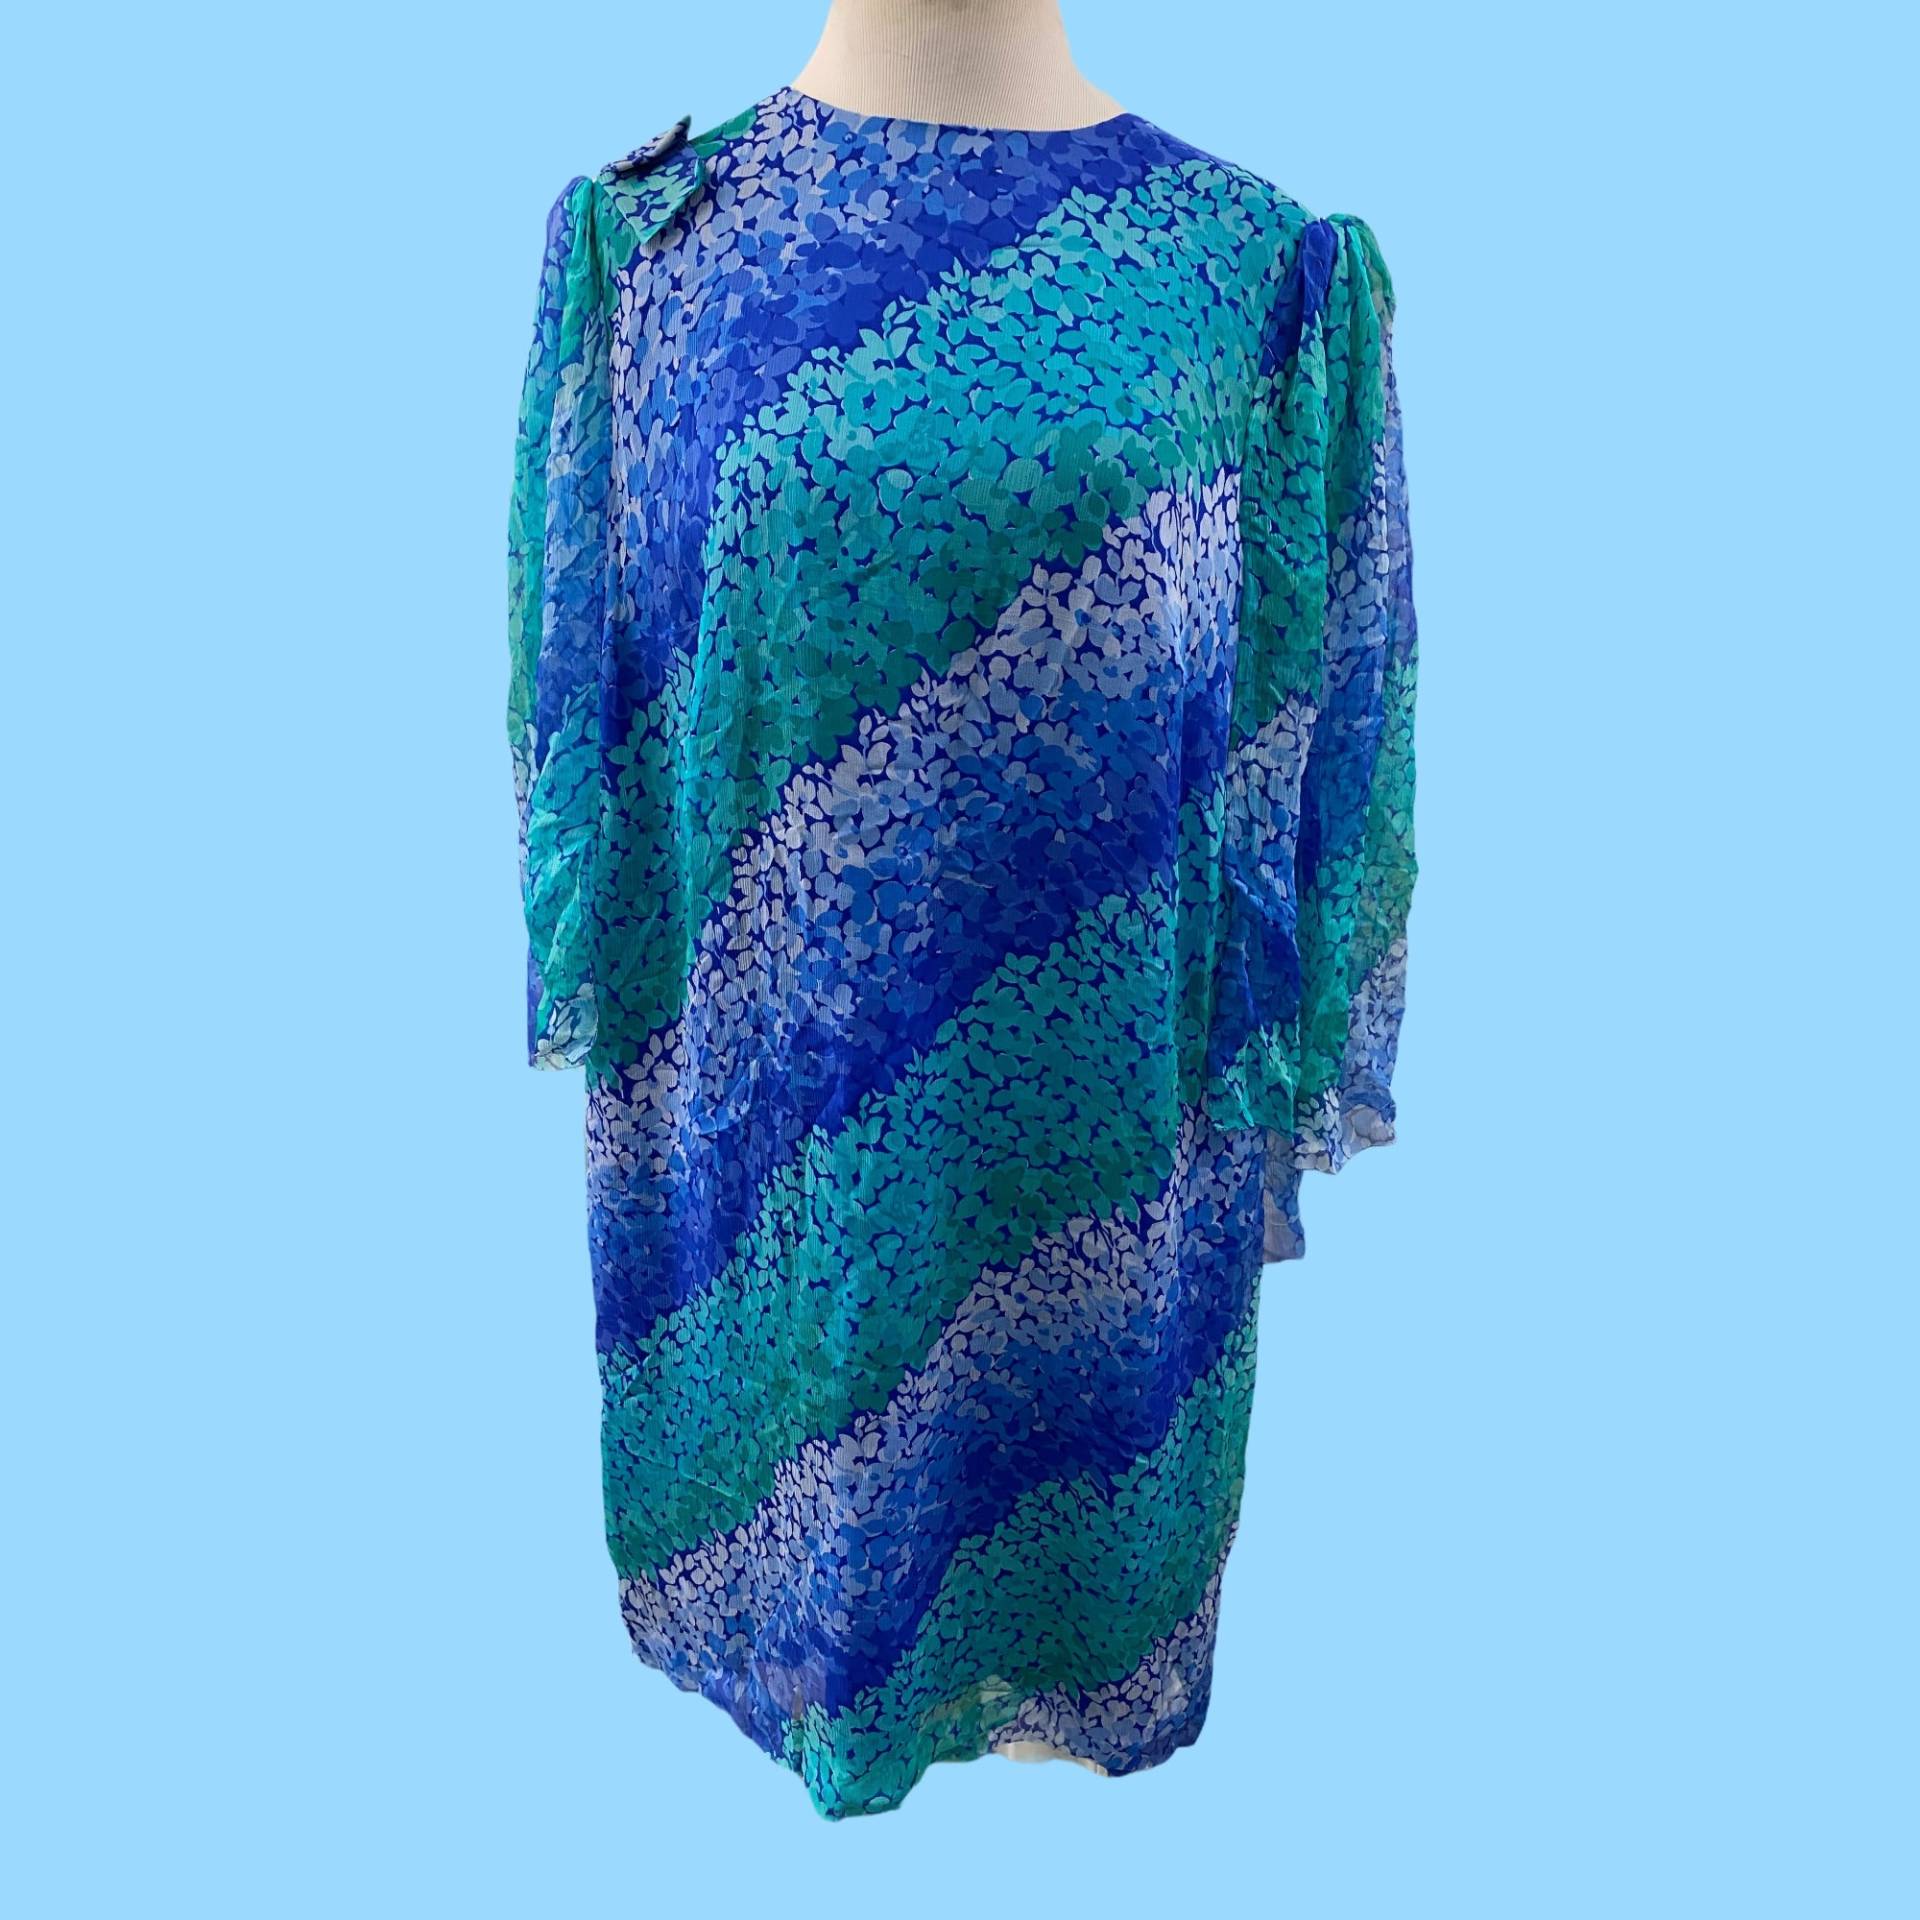 Vintage Blau & Grün Mod Seide Sommerkleid Von Simonetta Paris Größe Large von StevesVintageClothes